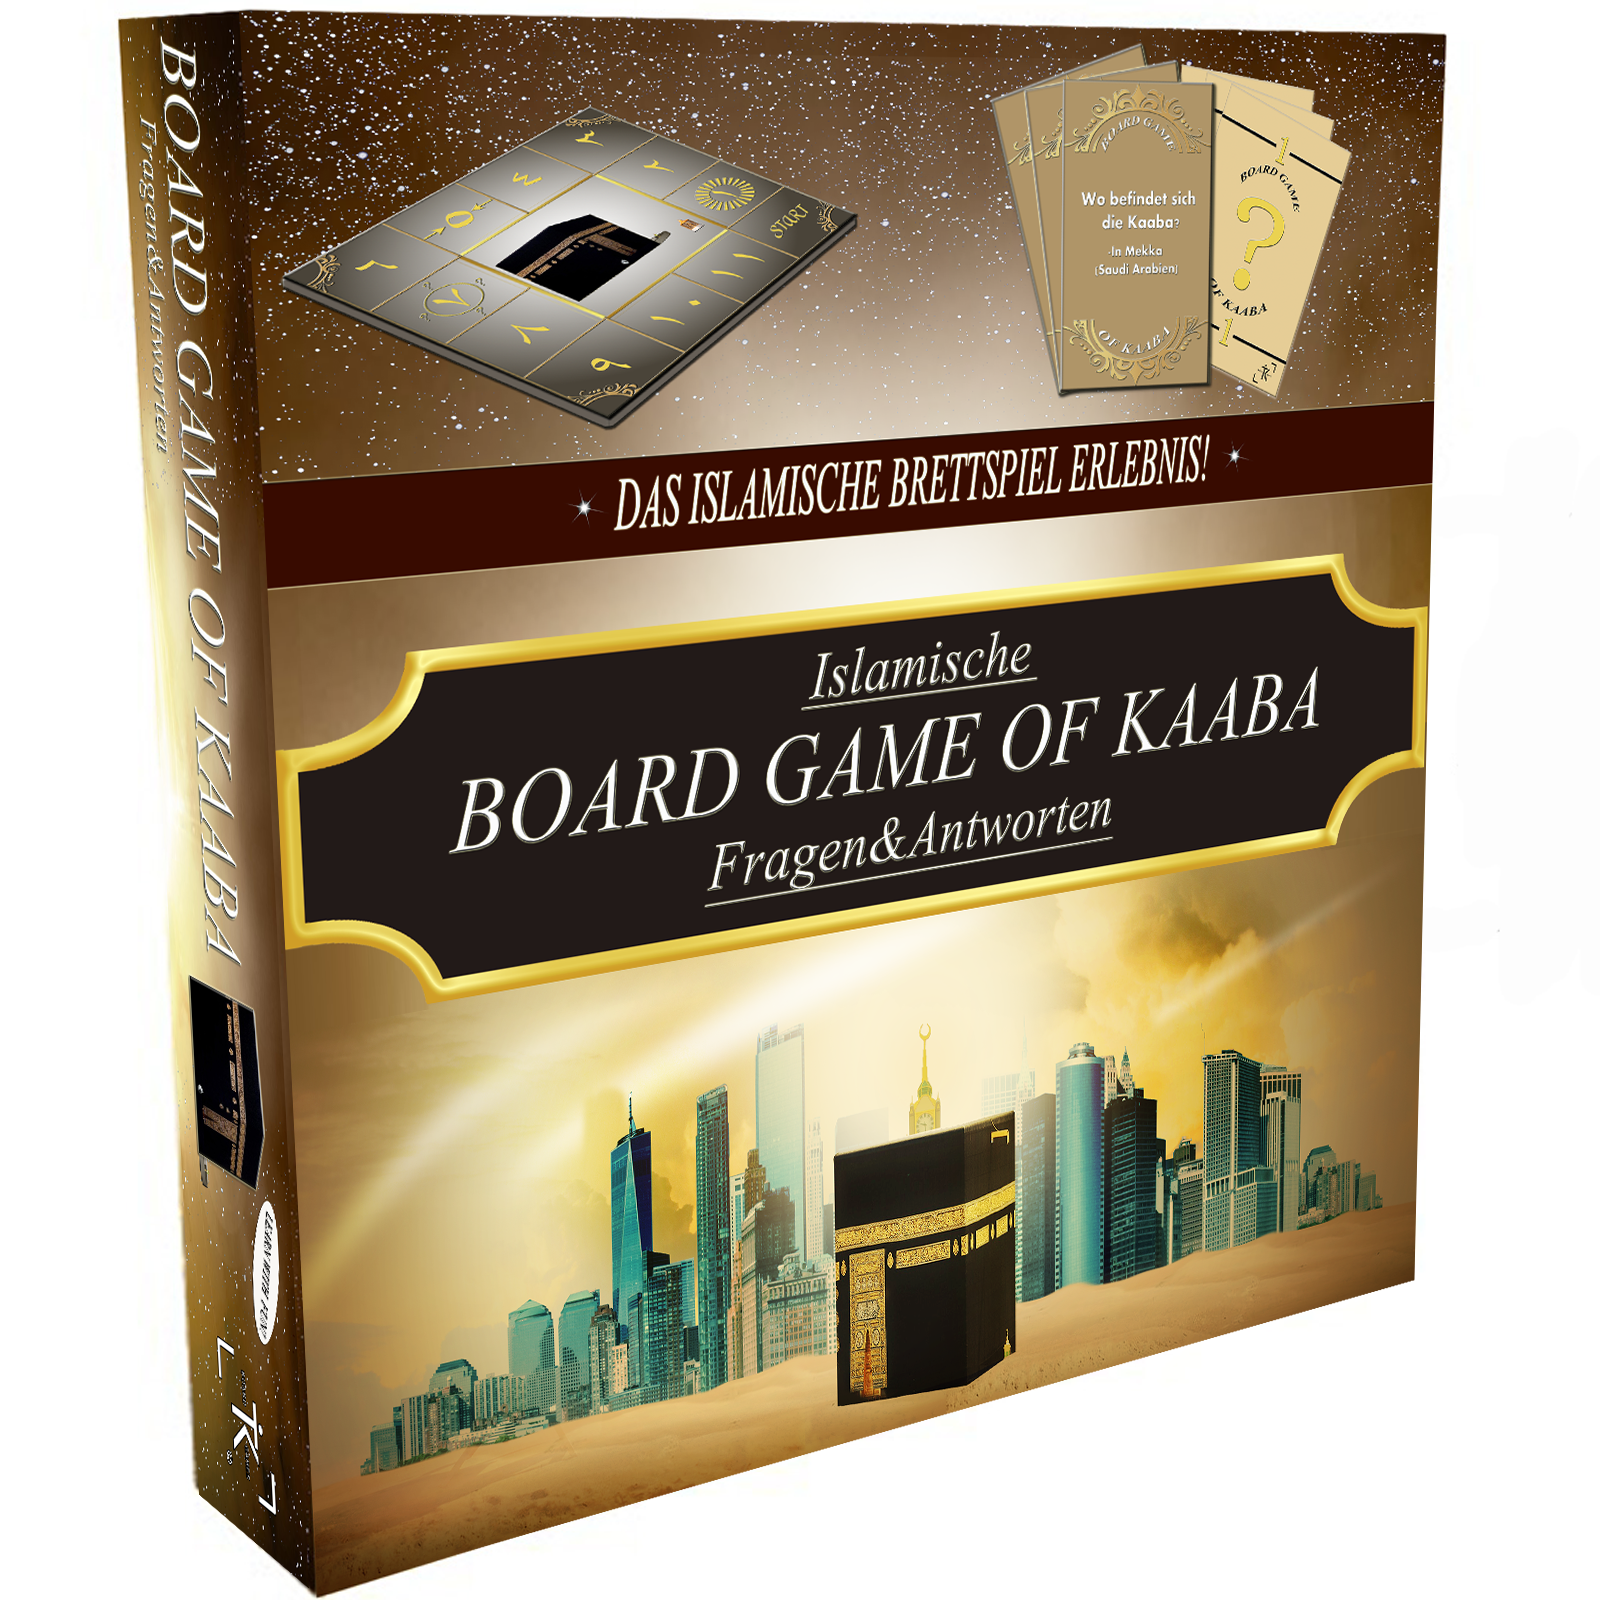 BOARD GAME OF KAABA - Das islamische Brettspiel Erlebnis! [Deutsche Version] KOSTENLOSER VERSAND